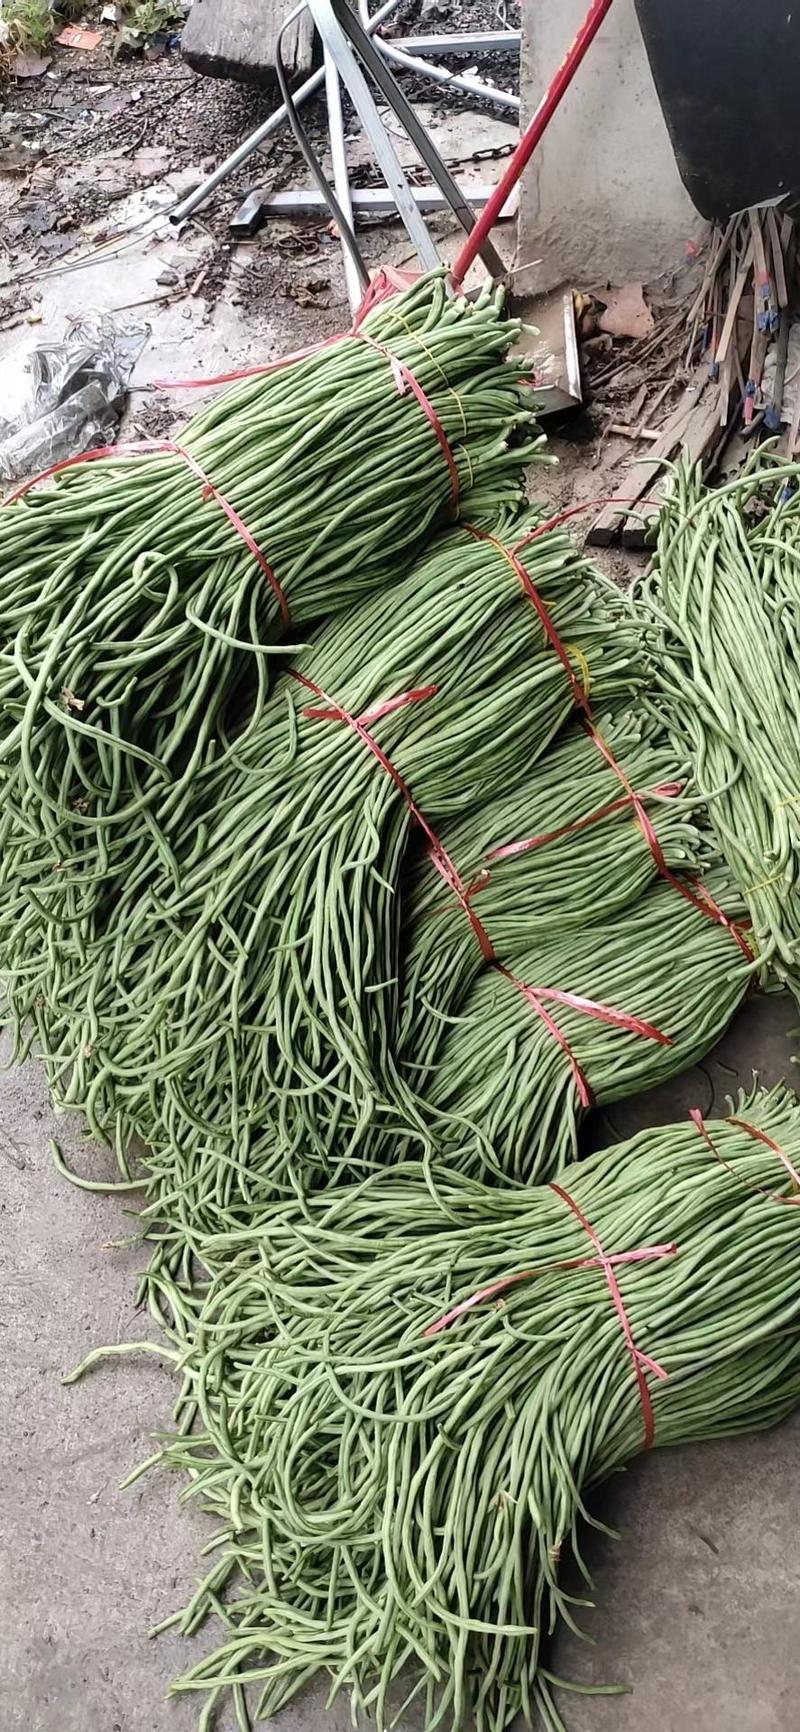 安徽青条豆角长豆大量供应货源